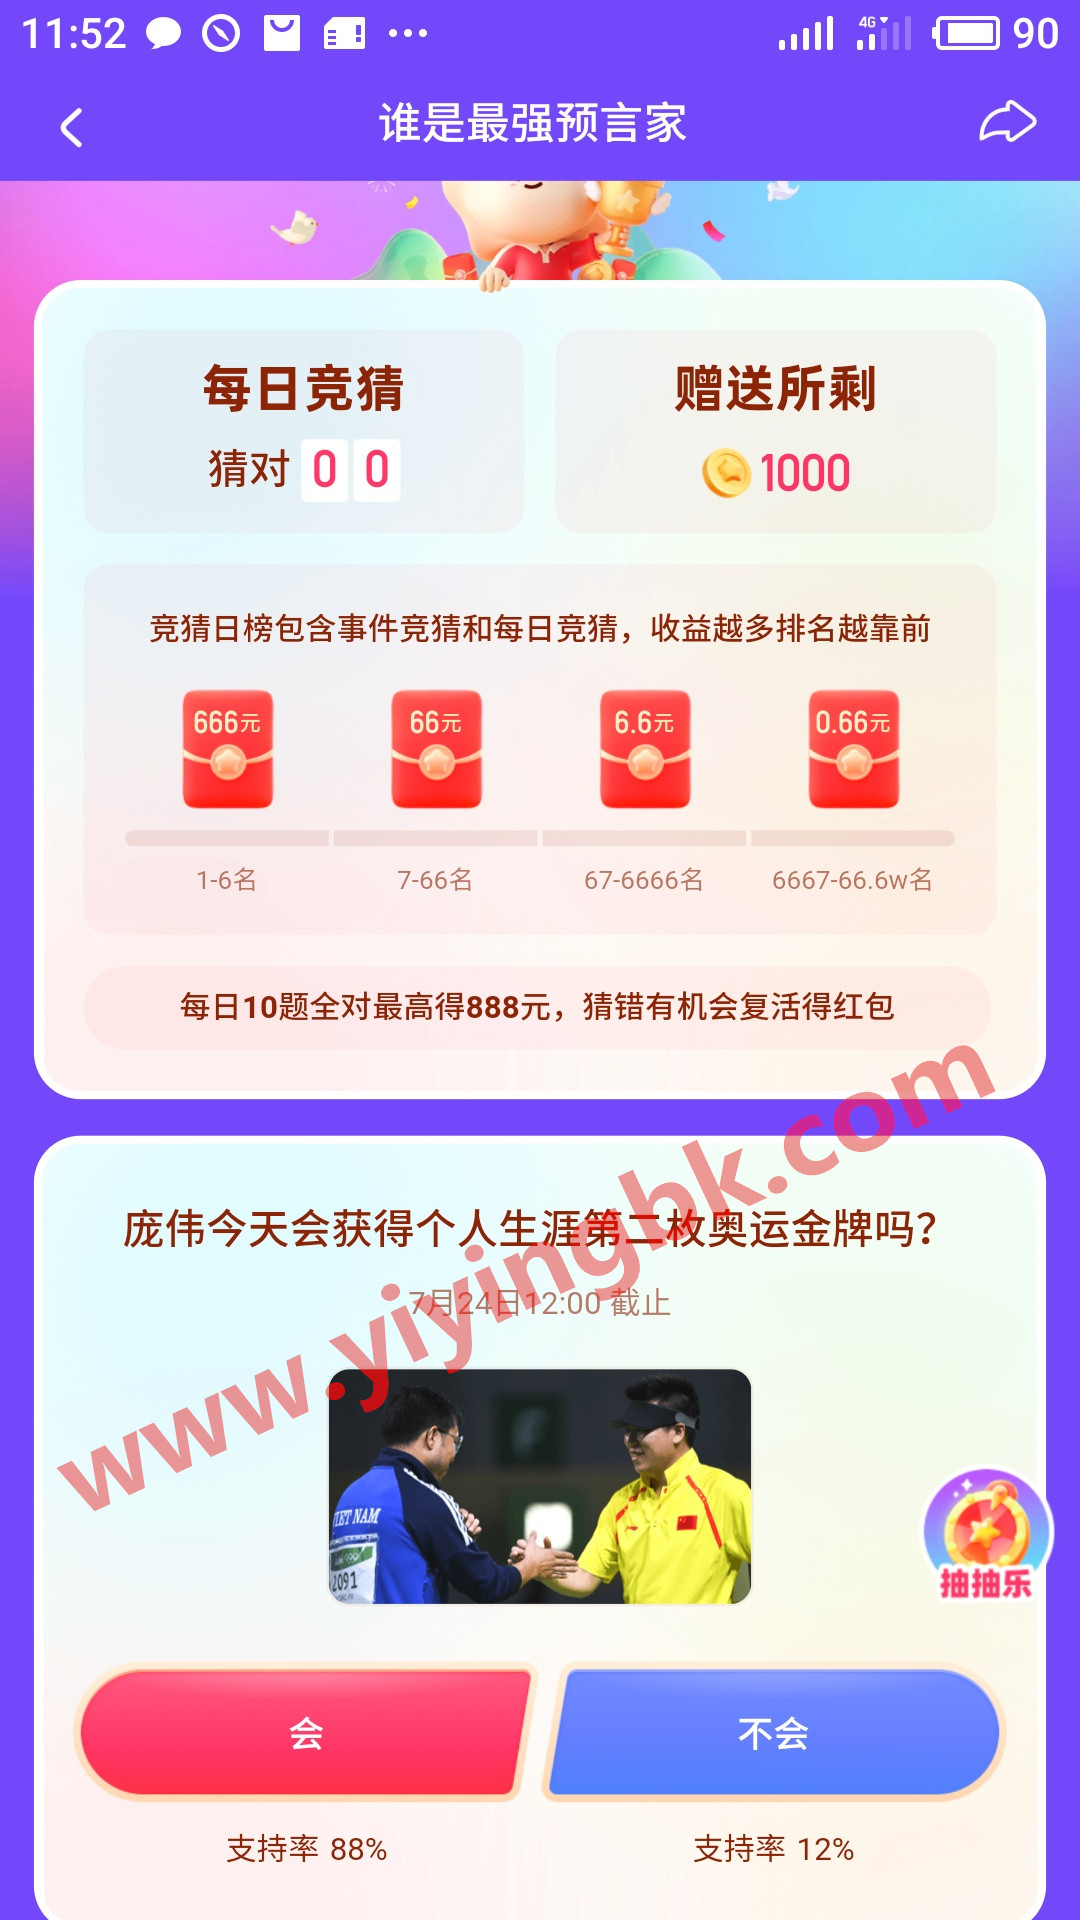 谁是最强预言家，答对10题最高得888元红包，还有666元的日榜奖励。www.yiyingbk.com